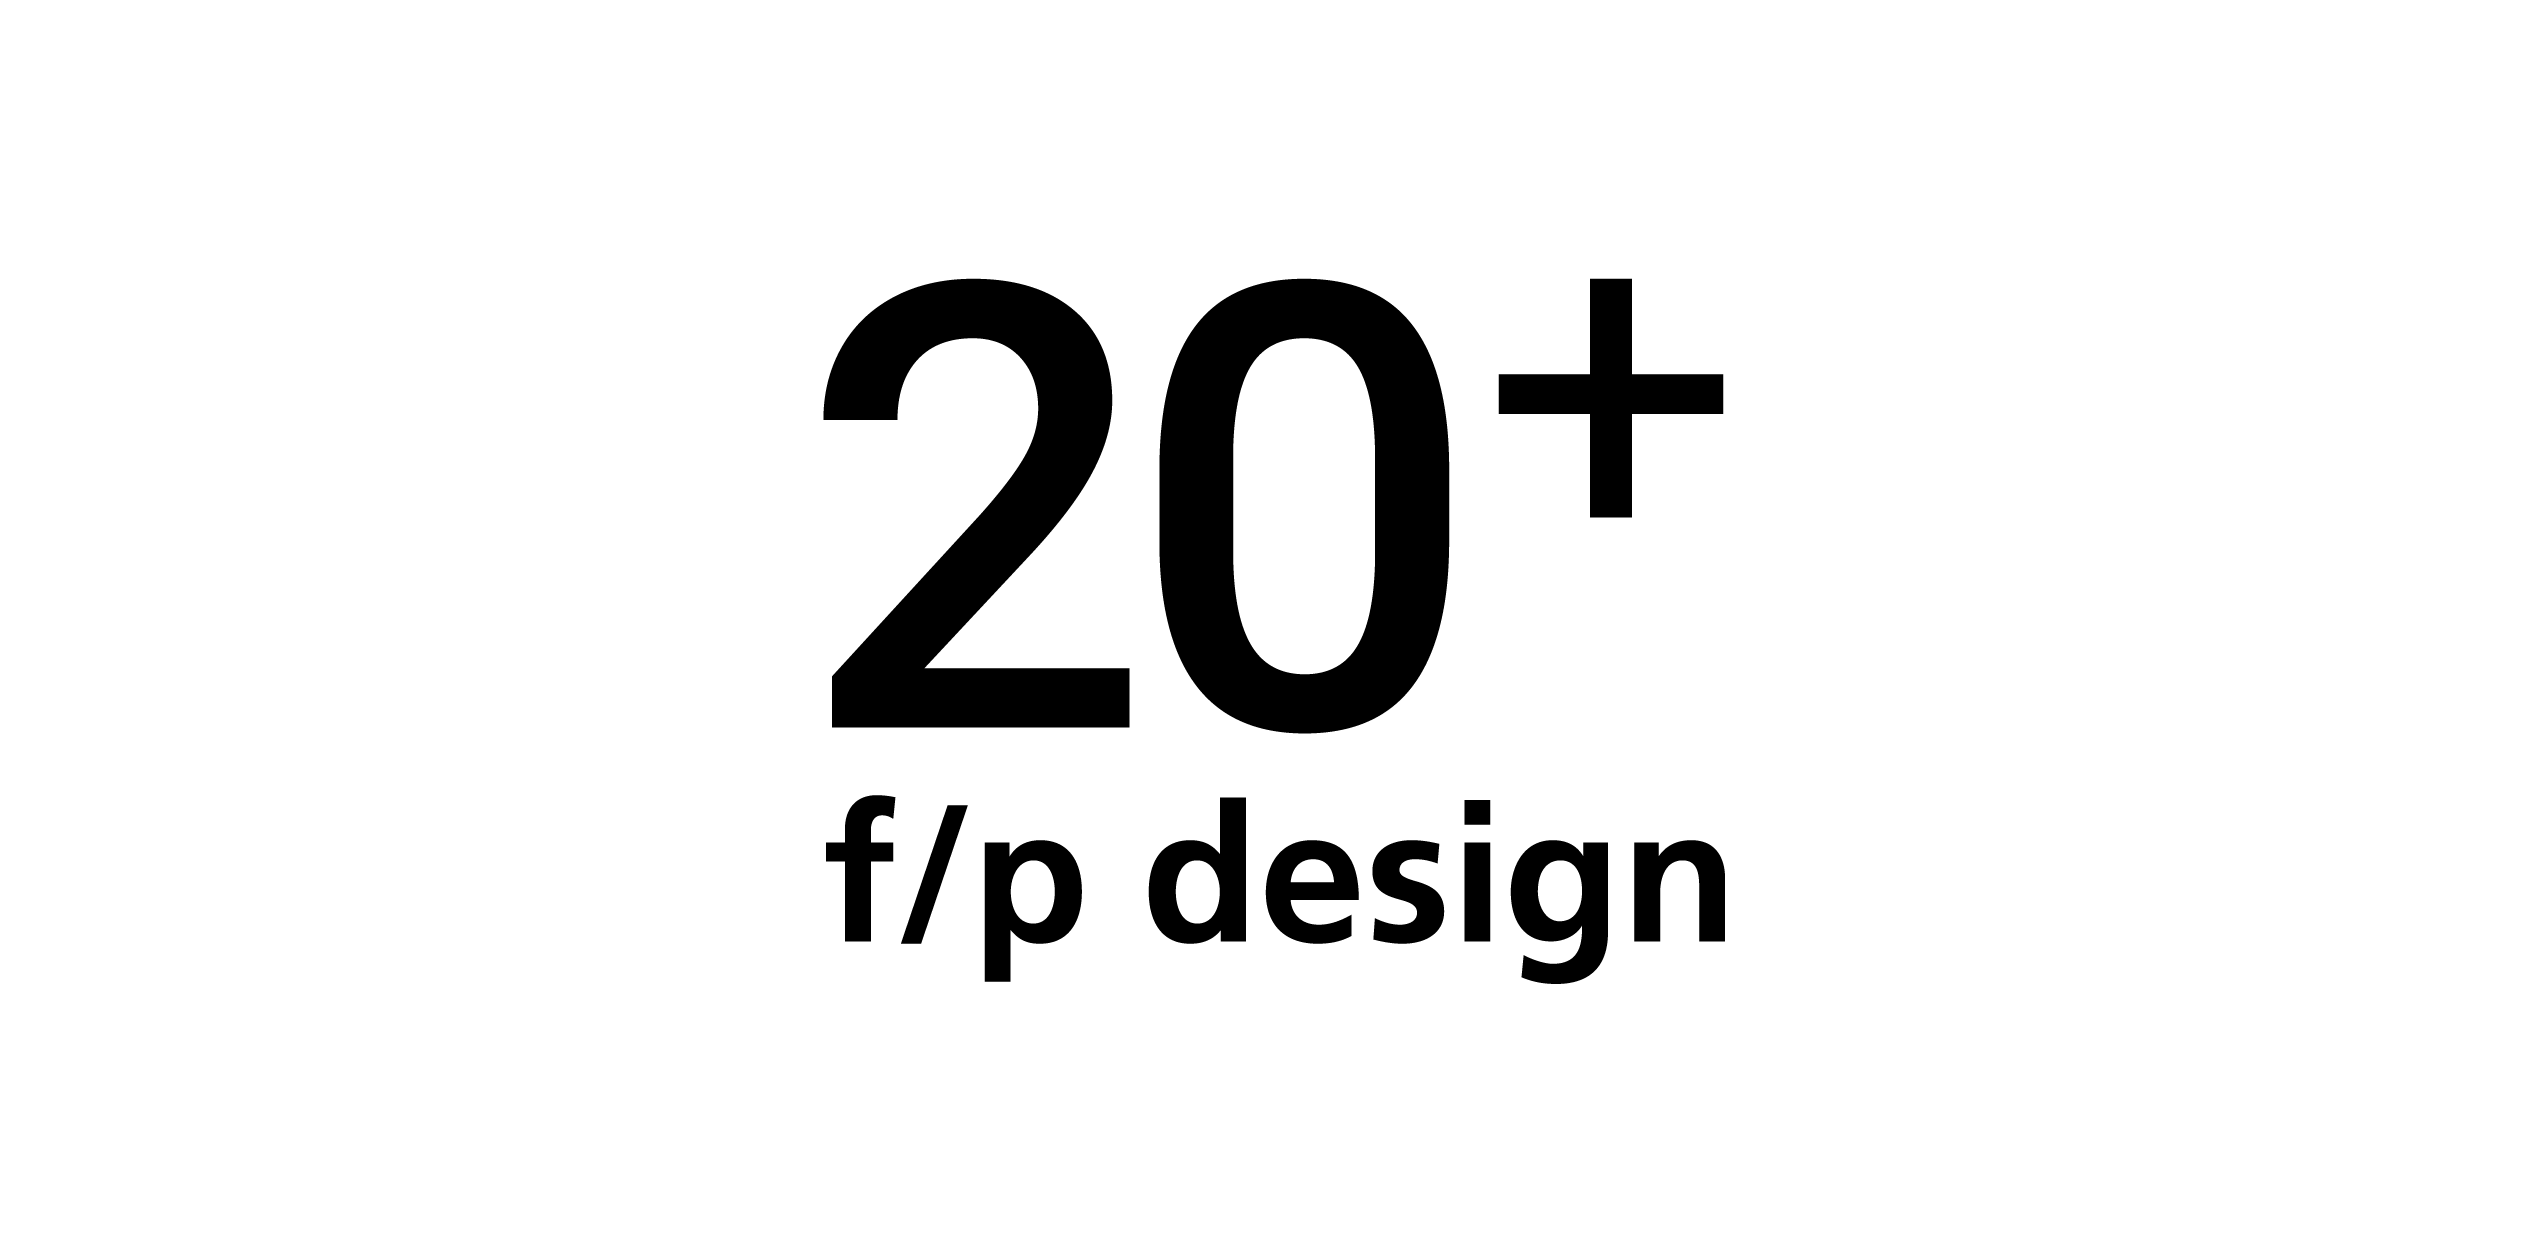 logo: 20th anniversary of f/p design